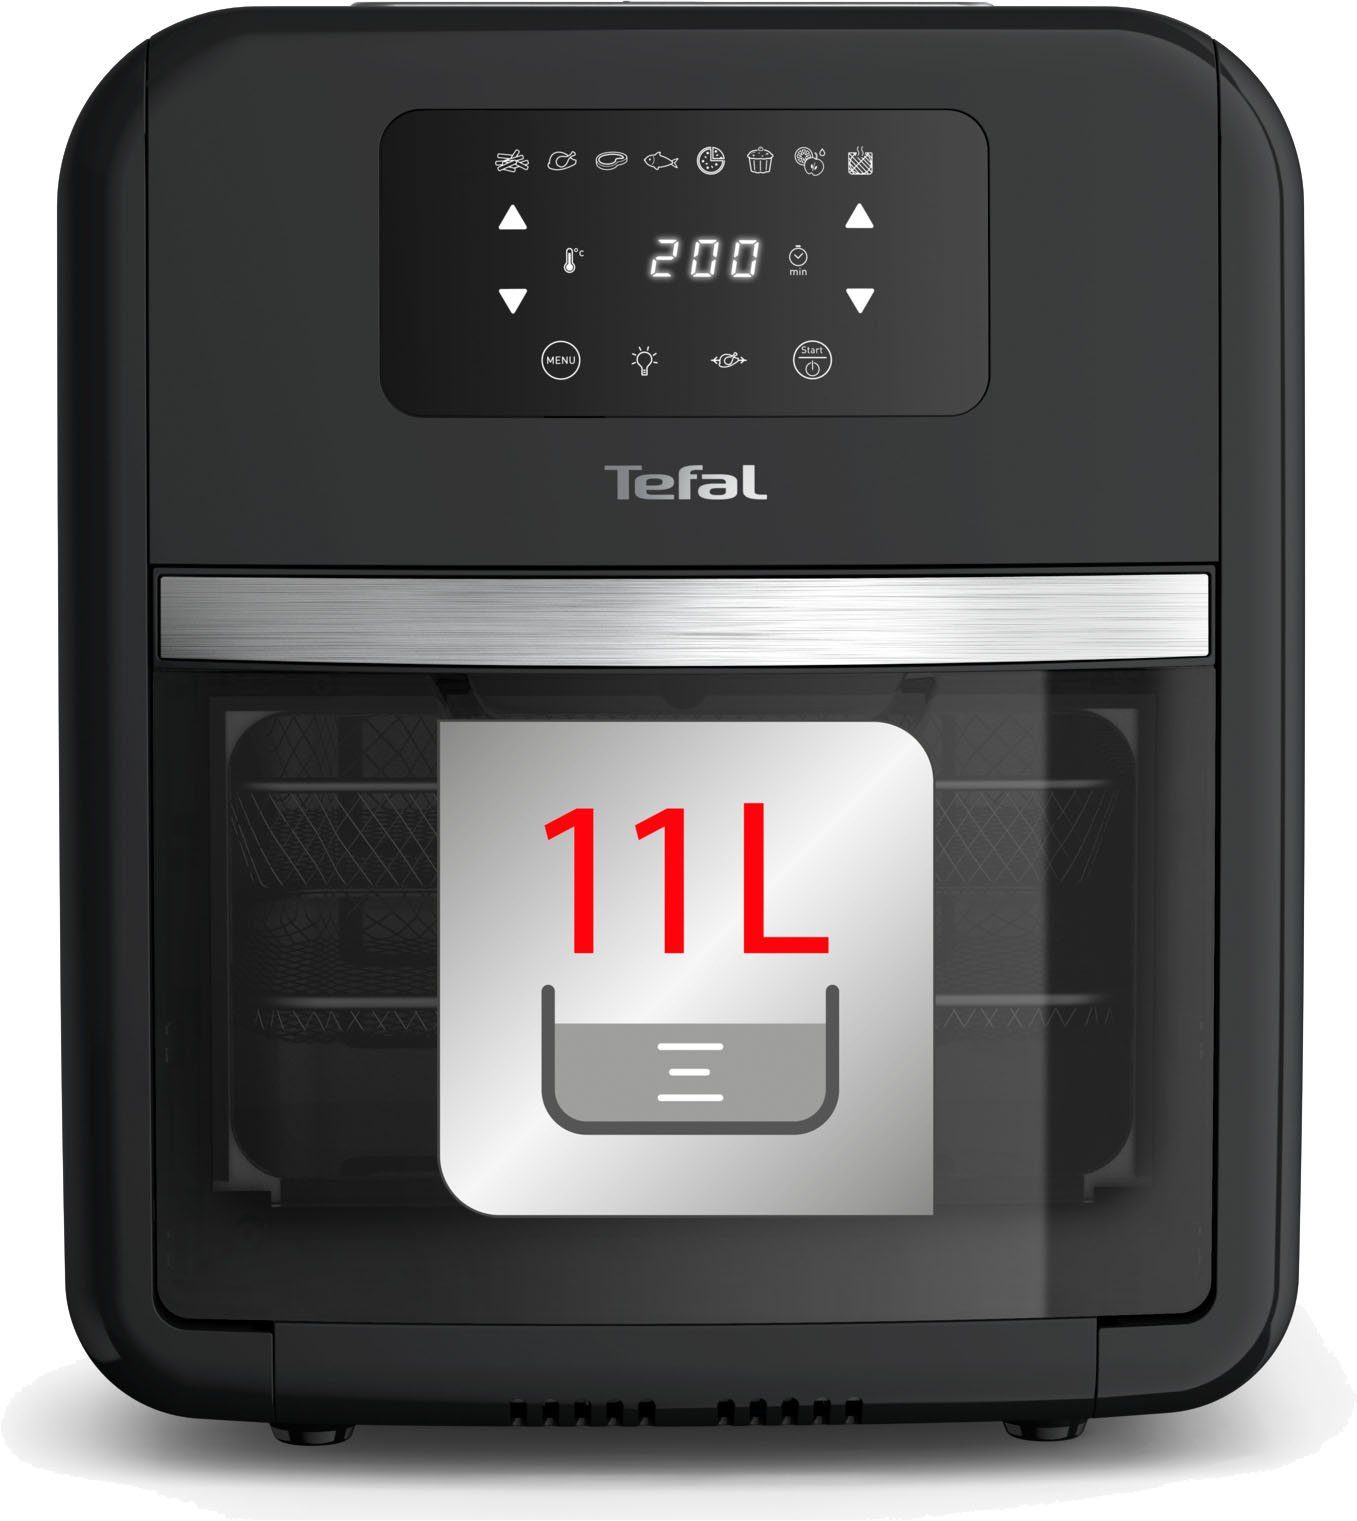 11 Tefal 7 FW5018 Reinigen, Zubehörteile, W, Fry einfach zu 2000 L, Grill, Heißluftfritteuse Temperaturkontrolle, Timer Easy Oven &